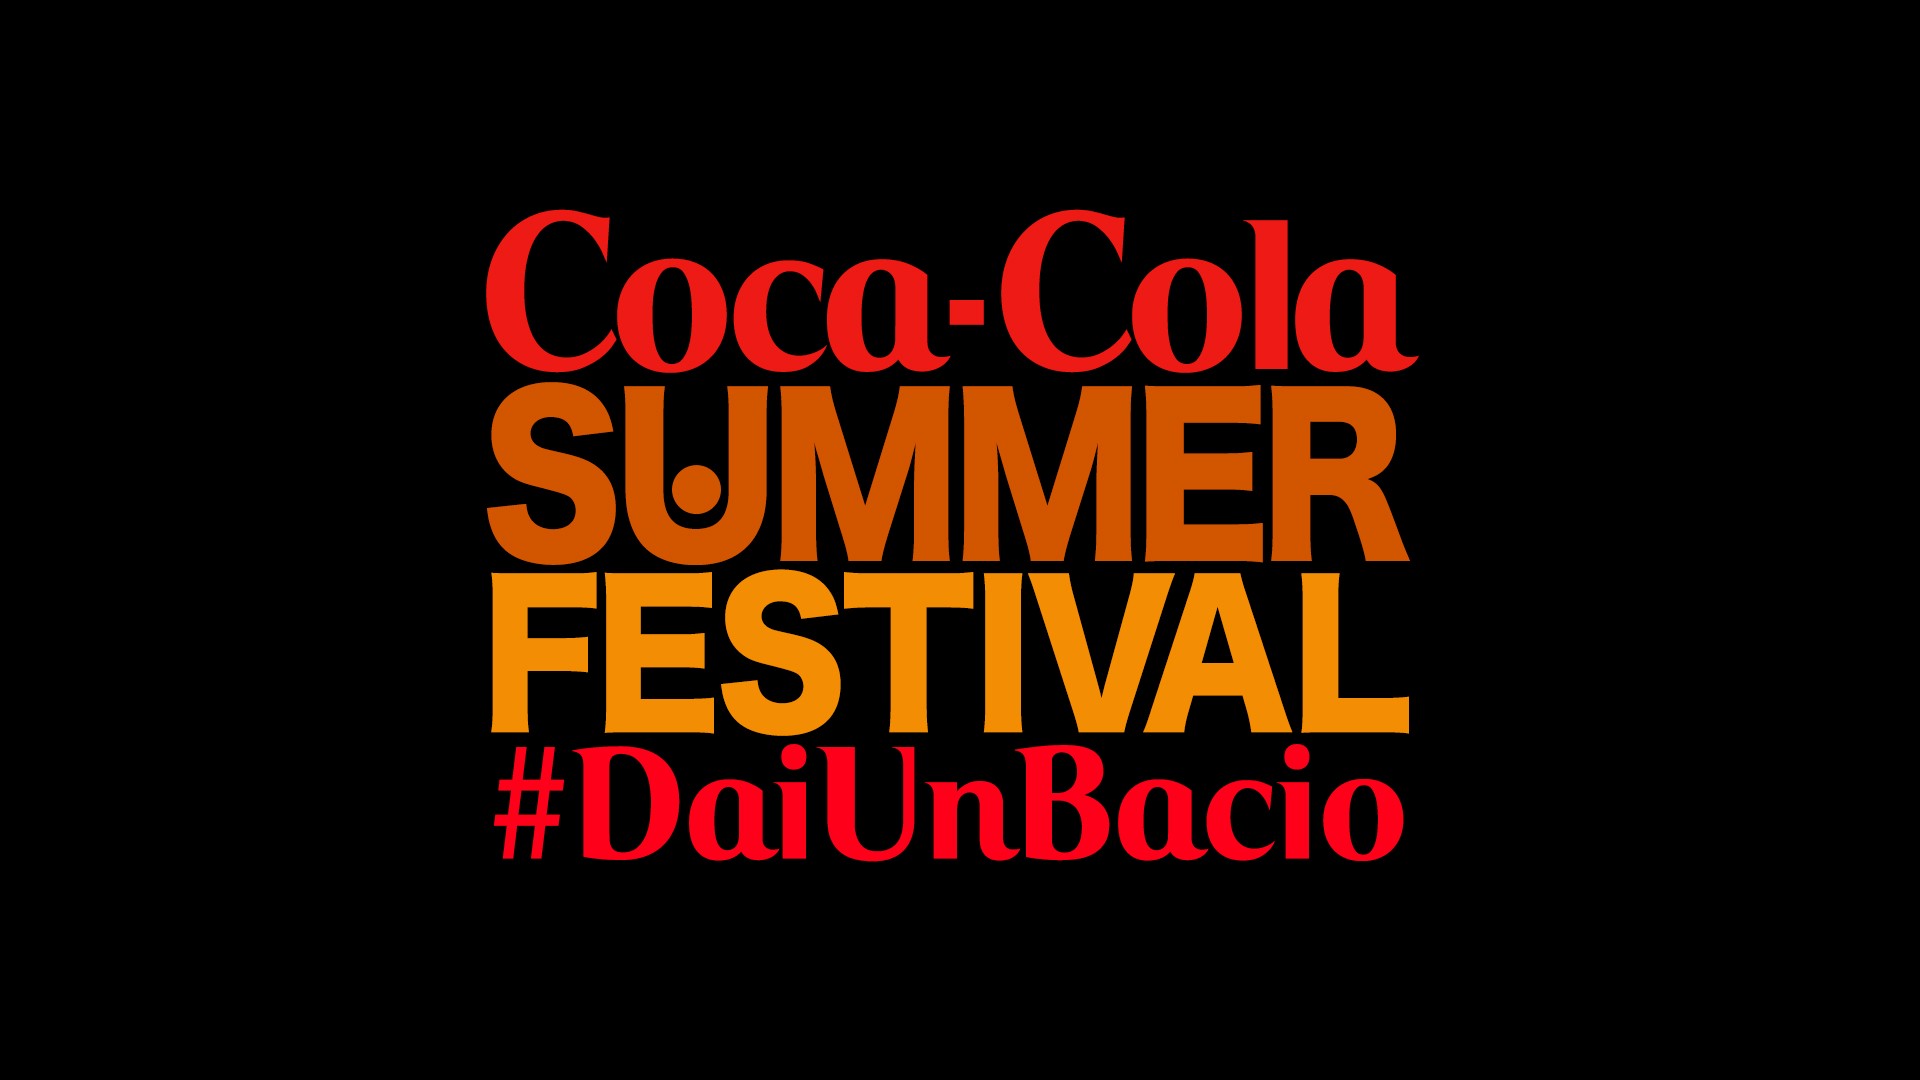 Coca-Cola SUMMER FESTIVAL #daiunbacio